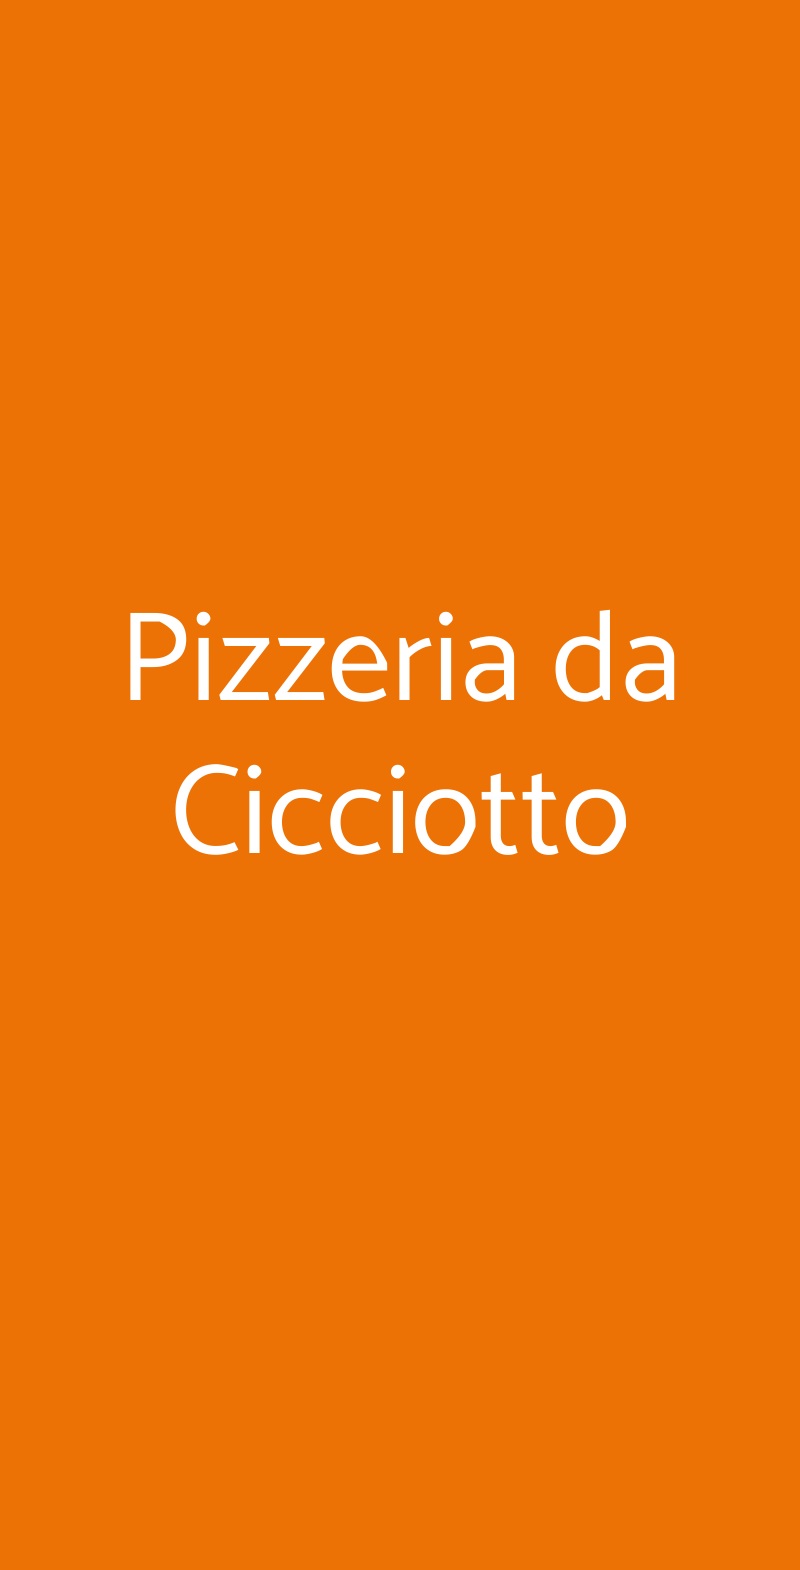 Pizzeria da Cicciotto Bologna menù 1 pagina